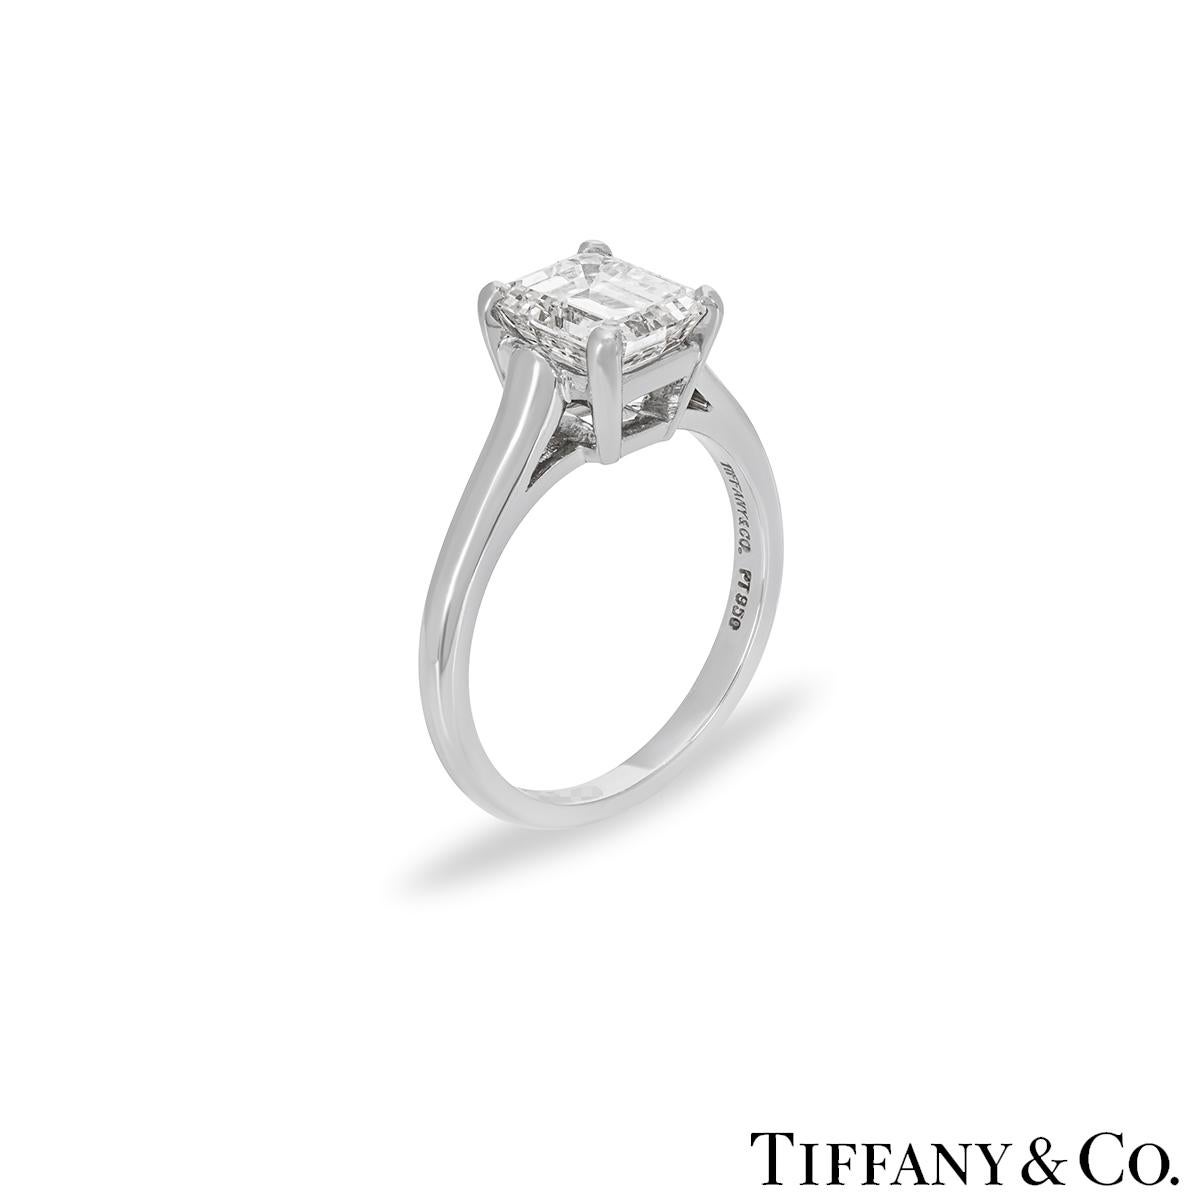 Une superbe bague en platine avec un seul diamant de Tiffany & Co. Le solitaire présente un diamant de taille émeraude pesant 1,59 ct, de couleur E et de pureté VS1, serti dans une monture à quatre griffes. La bague de 2 mm a un poids brut de 4,9